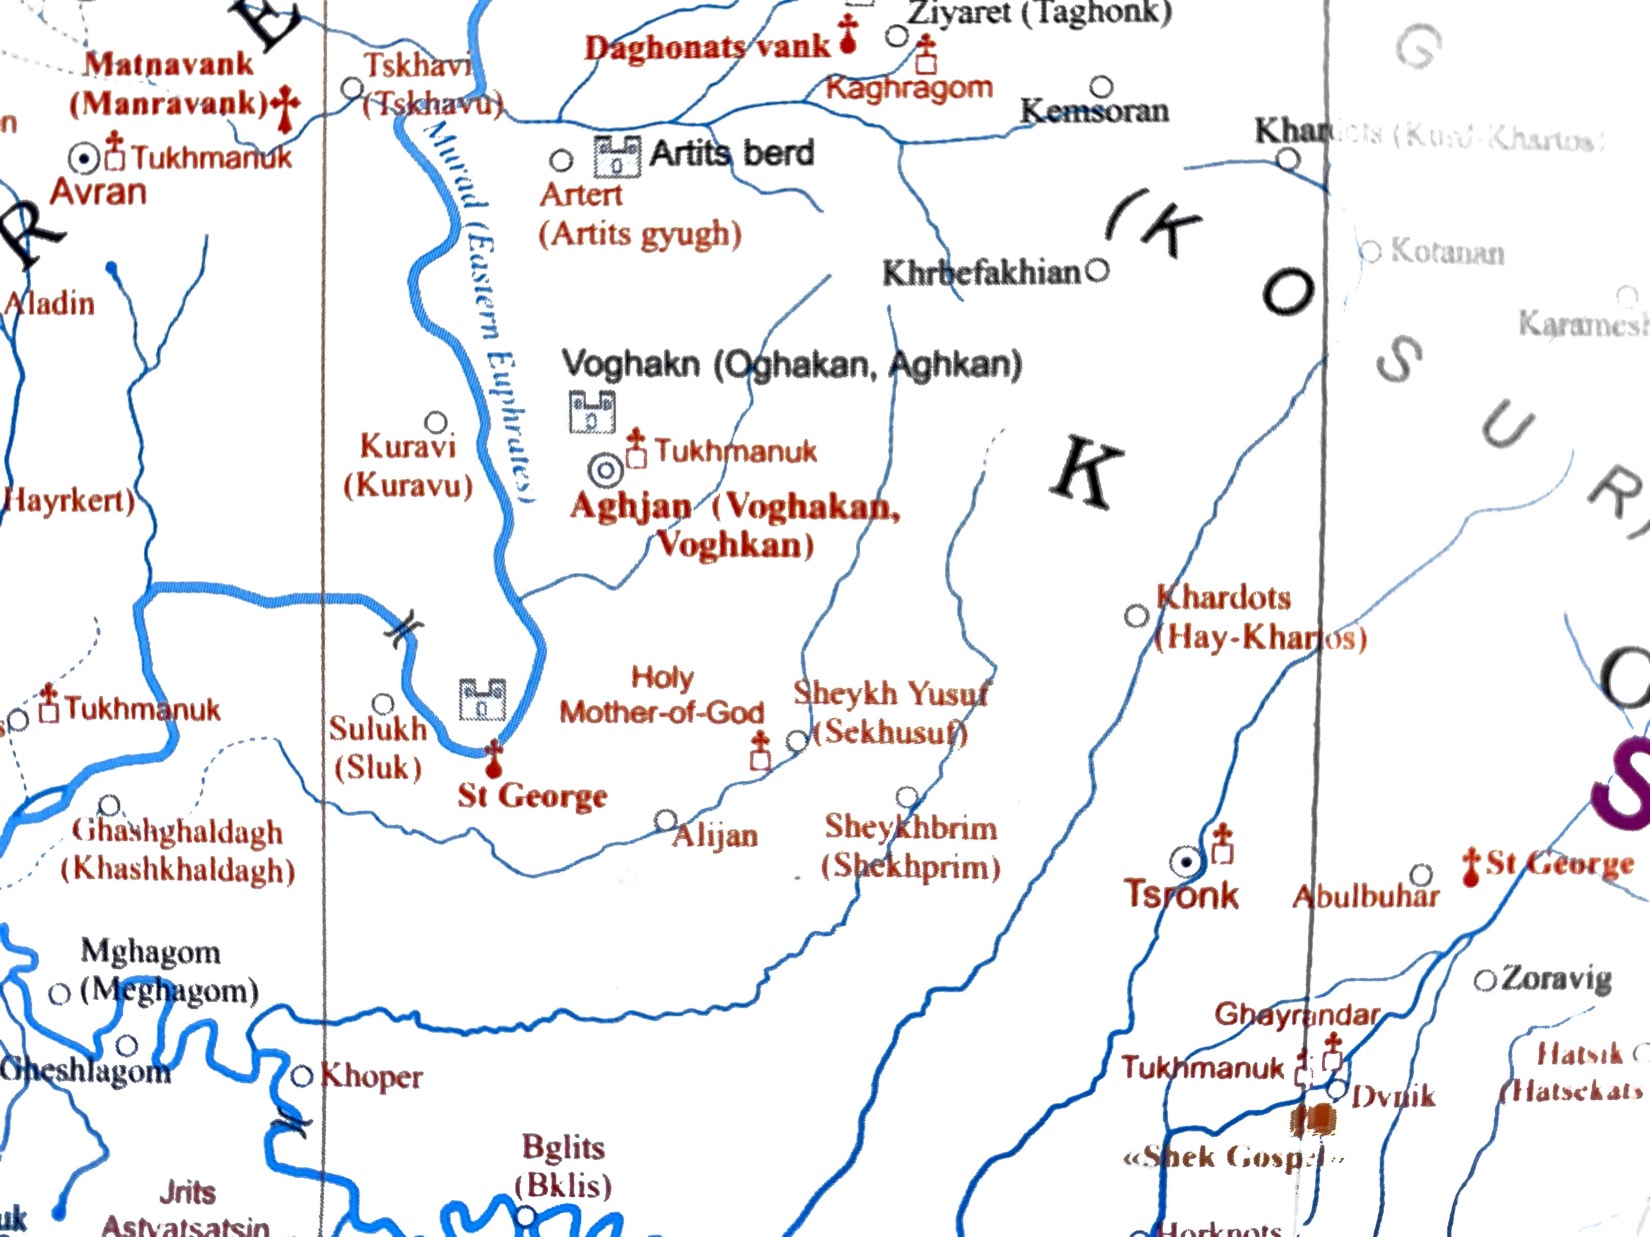 Map of the area around Mush.